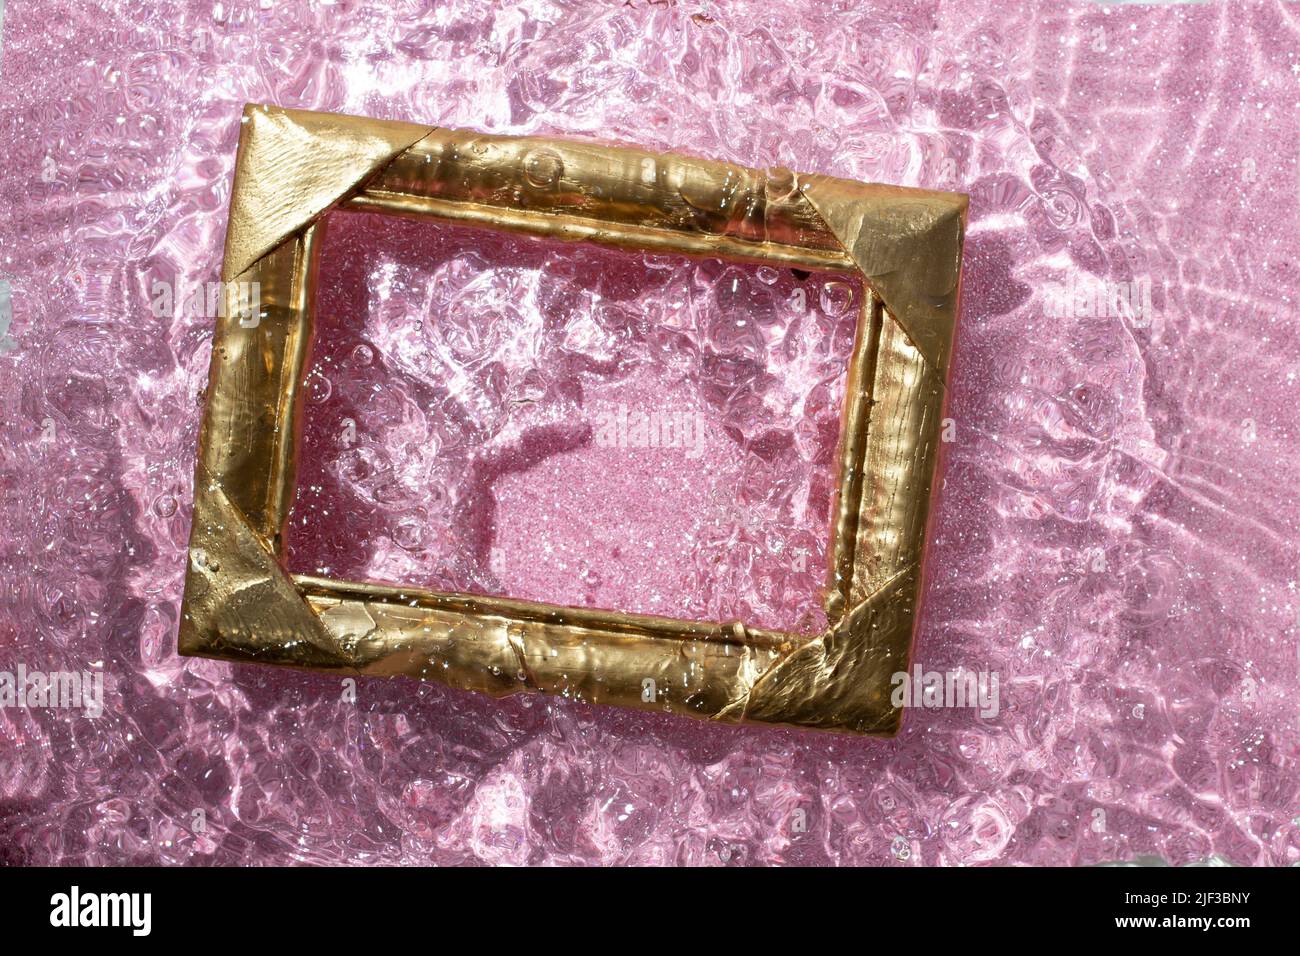 goldener Rahmen, der auf die Wasseroberfläche spritzt, mit sandigem rosa Glitzer auf dem Boden. Stockfoto